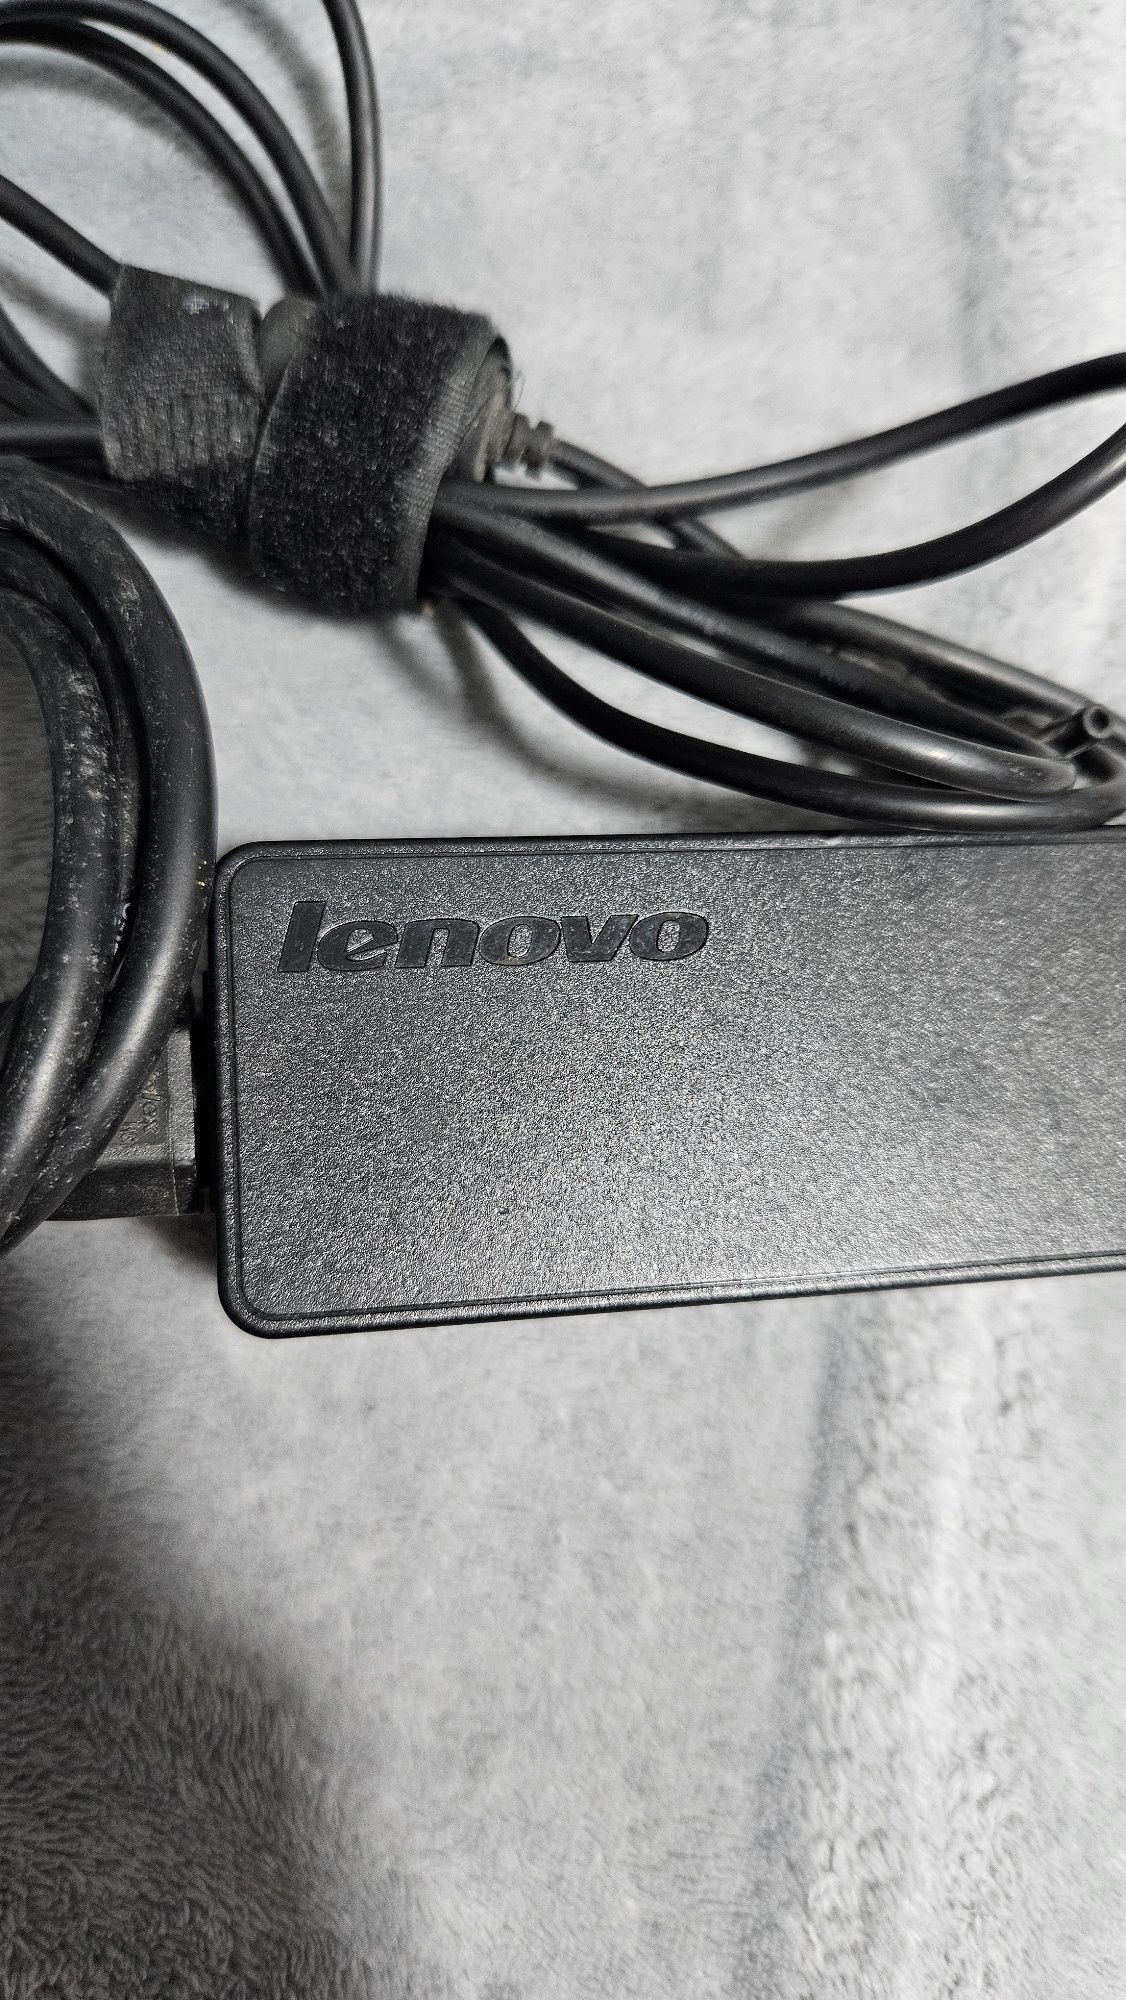 Încărcător Lenovo stare buna